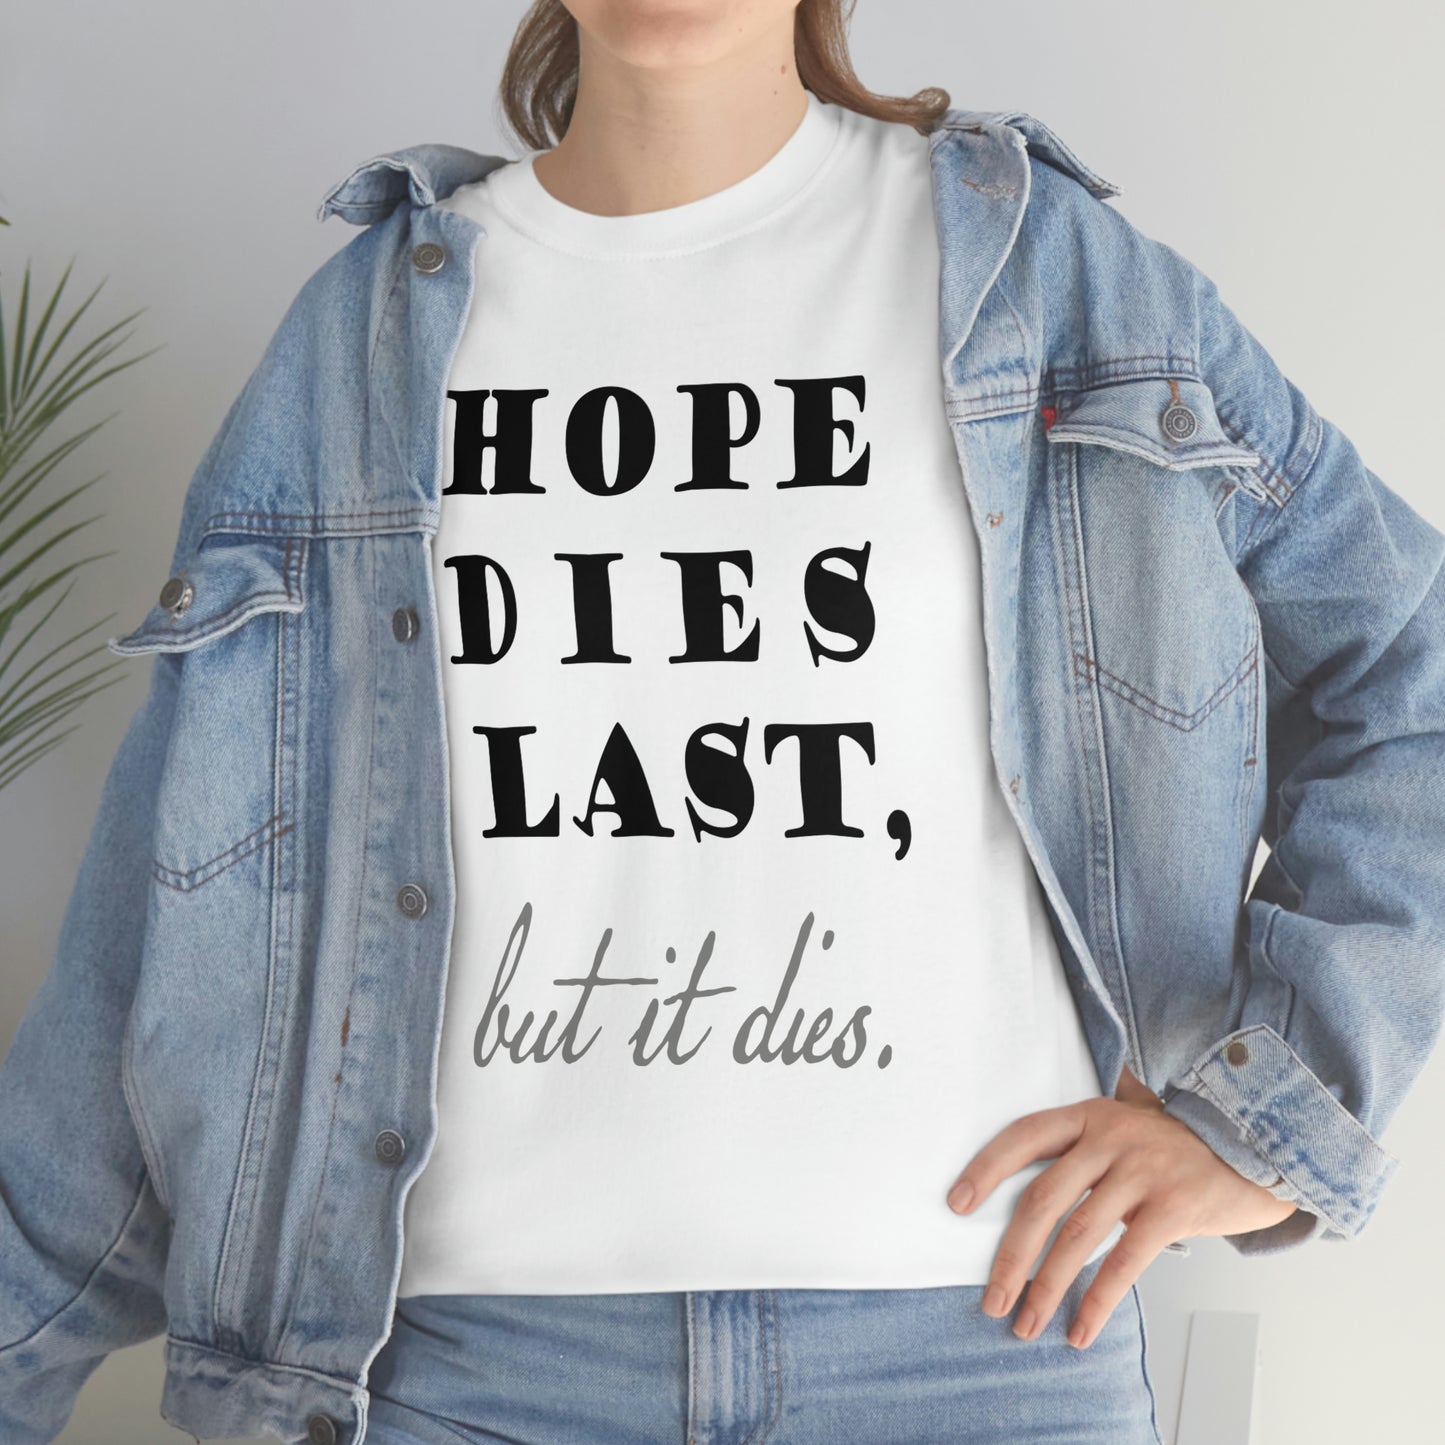 hope dies last, but it dies!